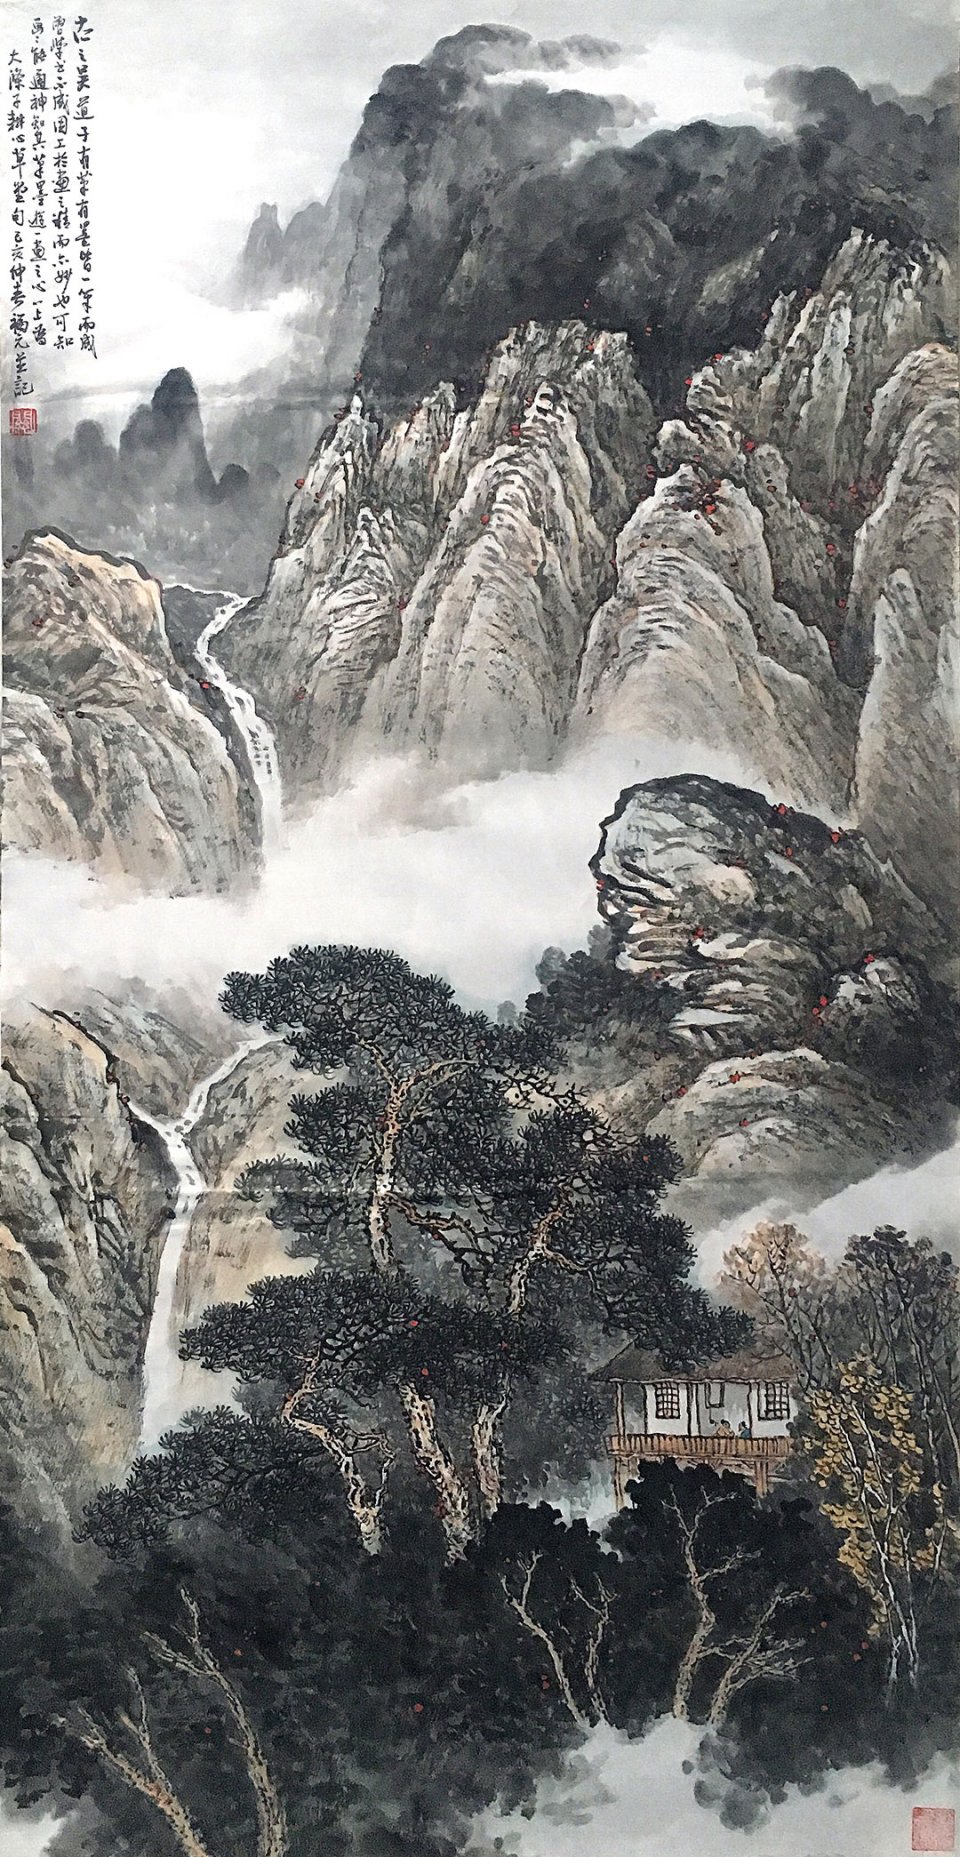 关福元——山水画意境高远,浑厚华滋,具有强烈的时代气息